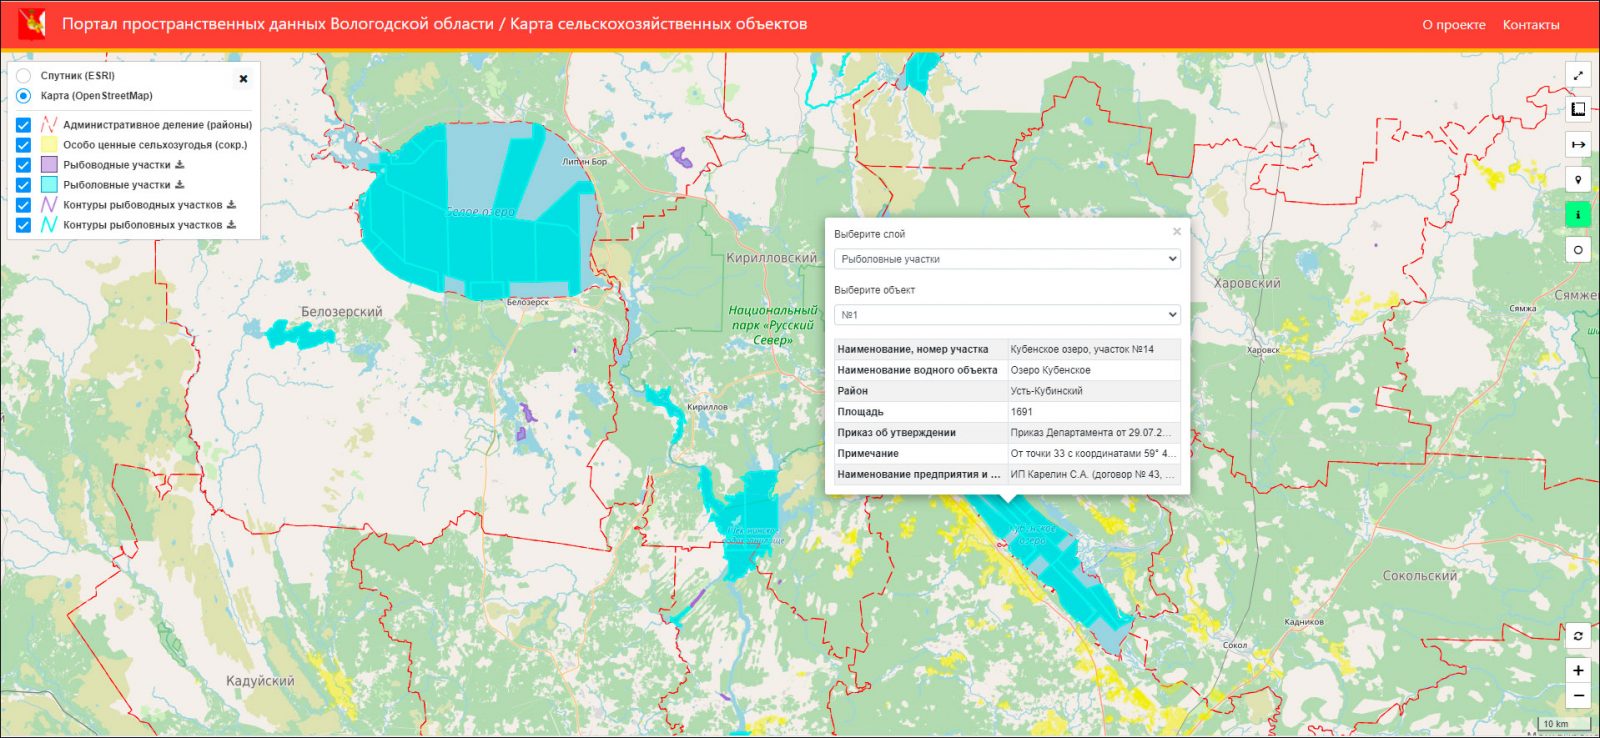 Карта сельскохозяйственных объектов, рыбопромысловых и рыбоводных участков Вологодской области.